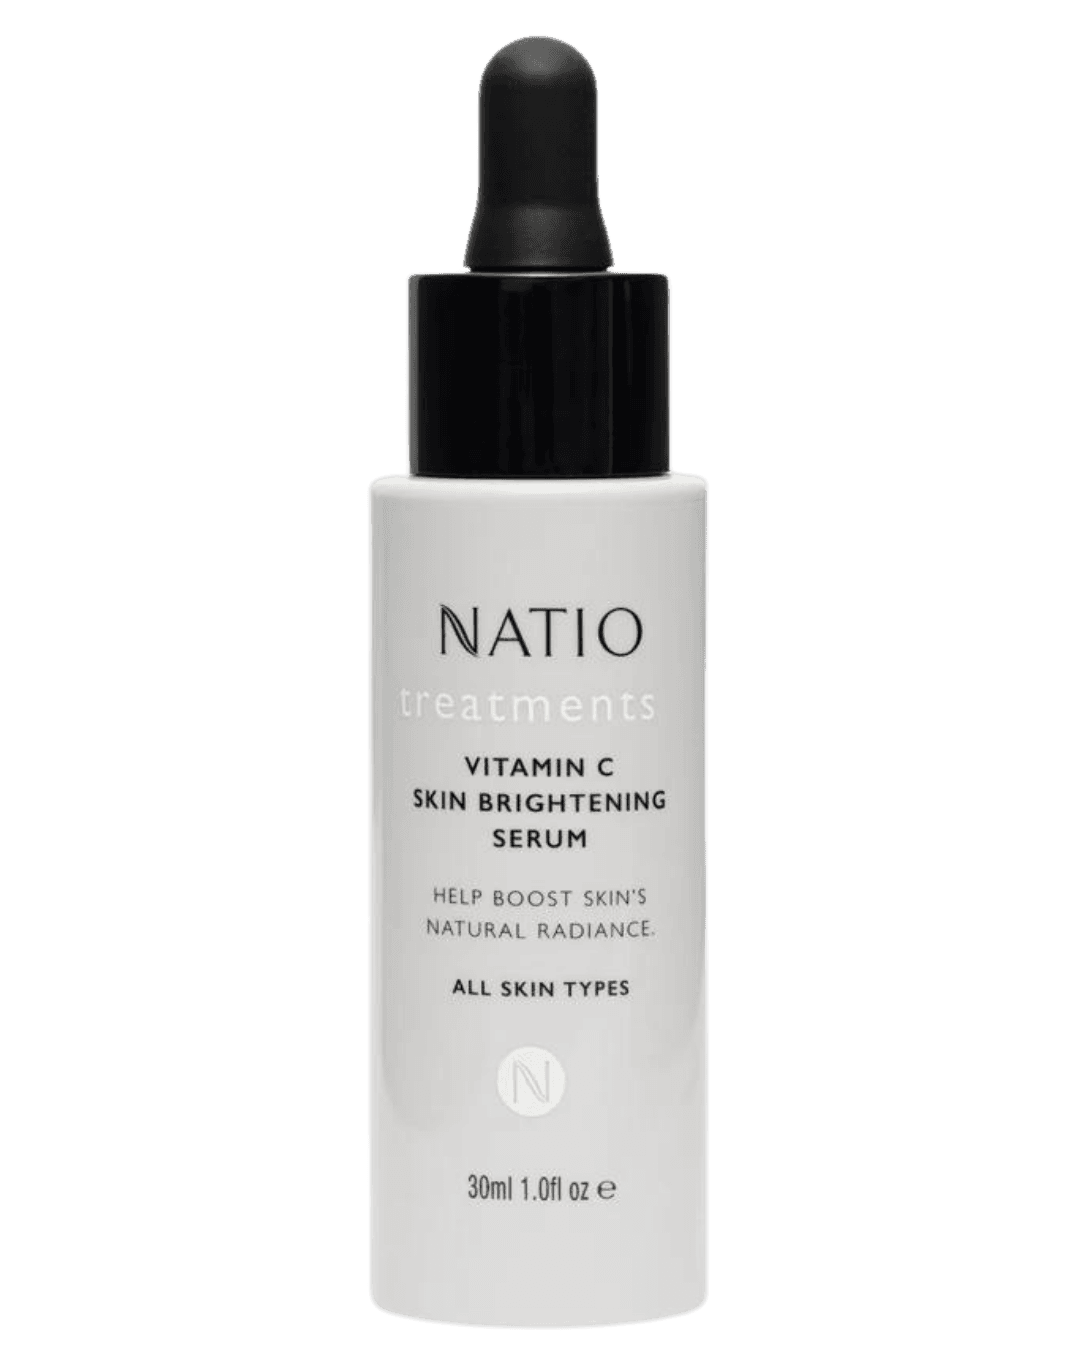 Natio Vitamin C Brightening Serum